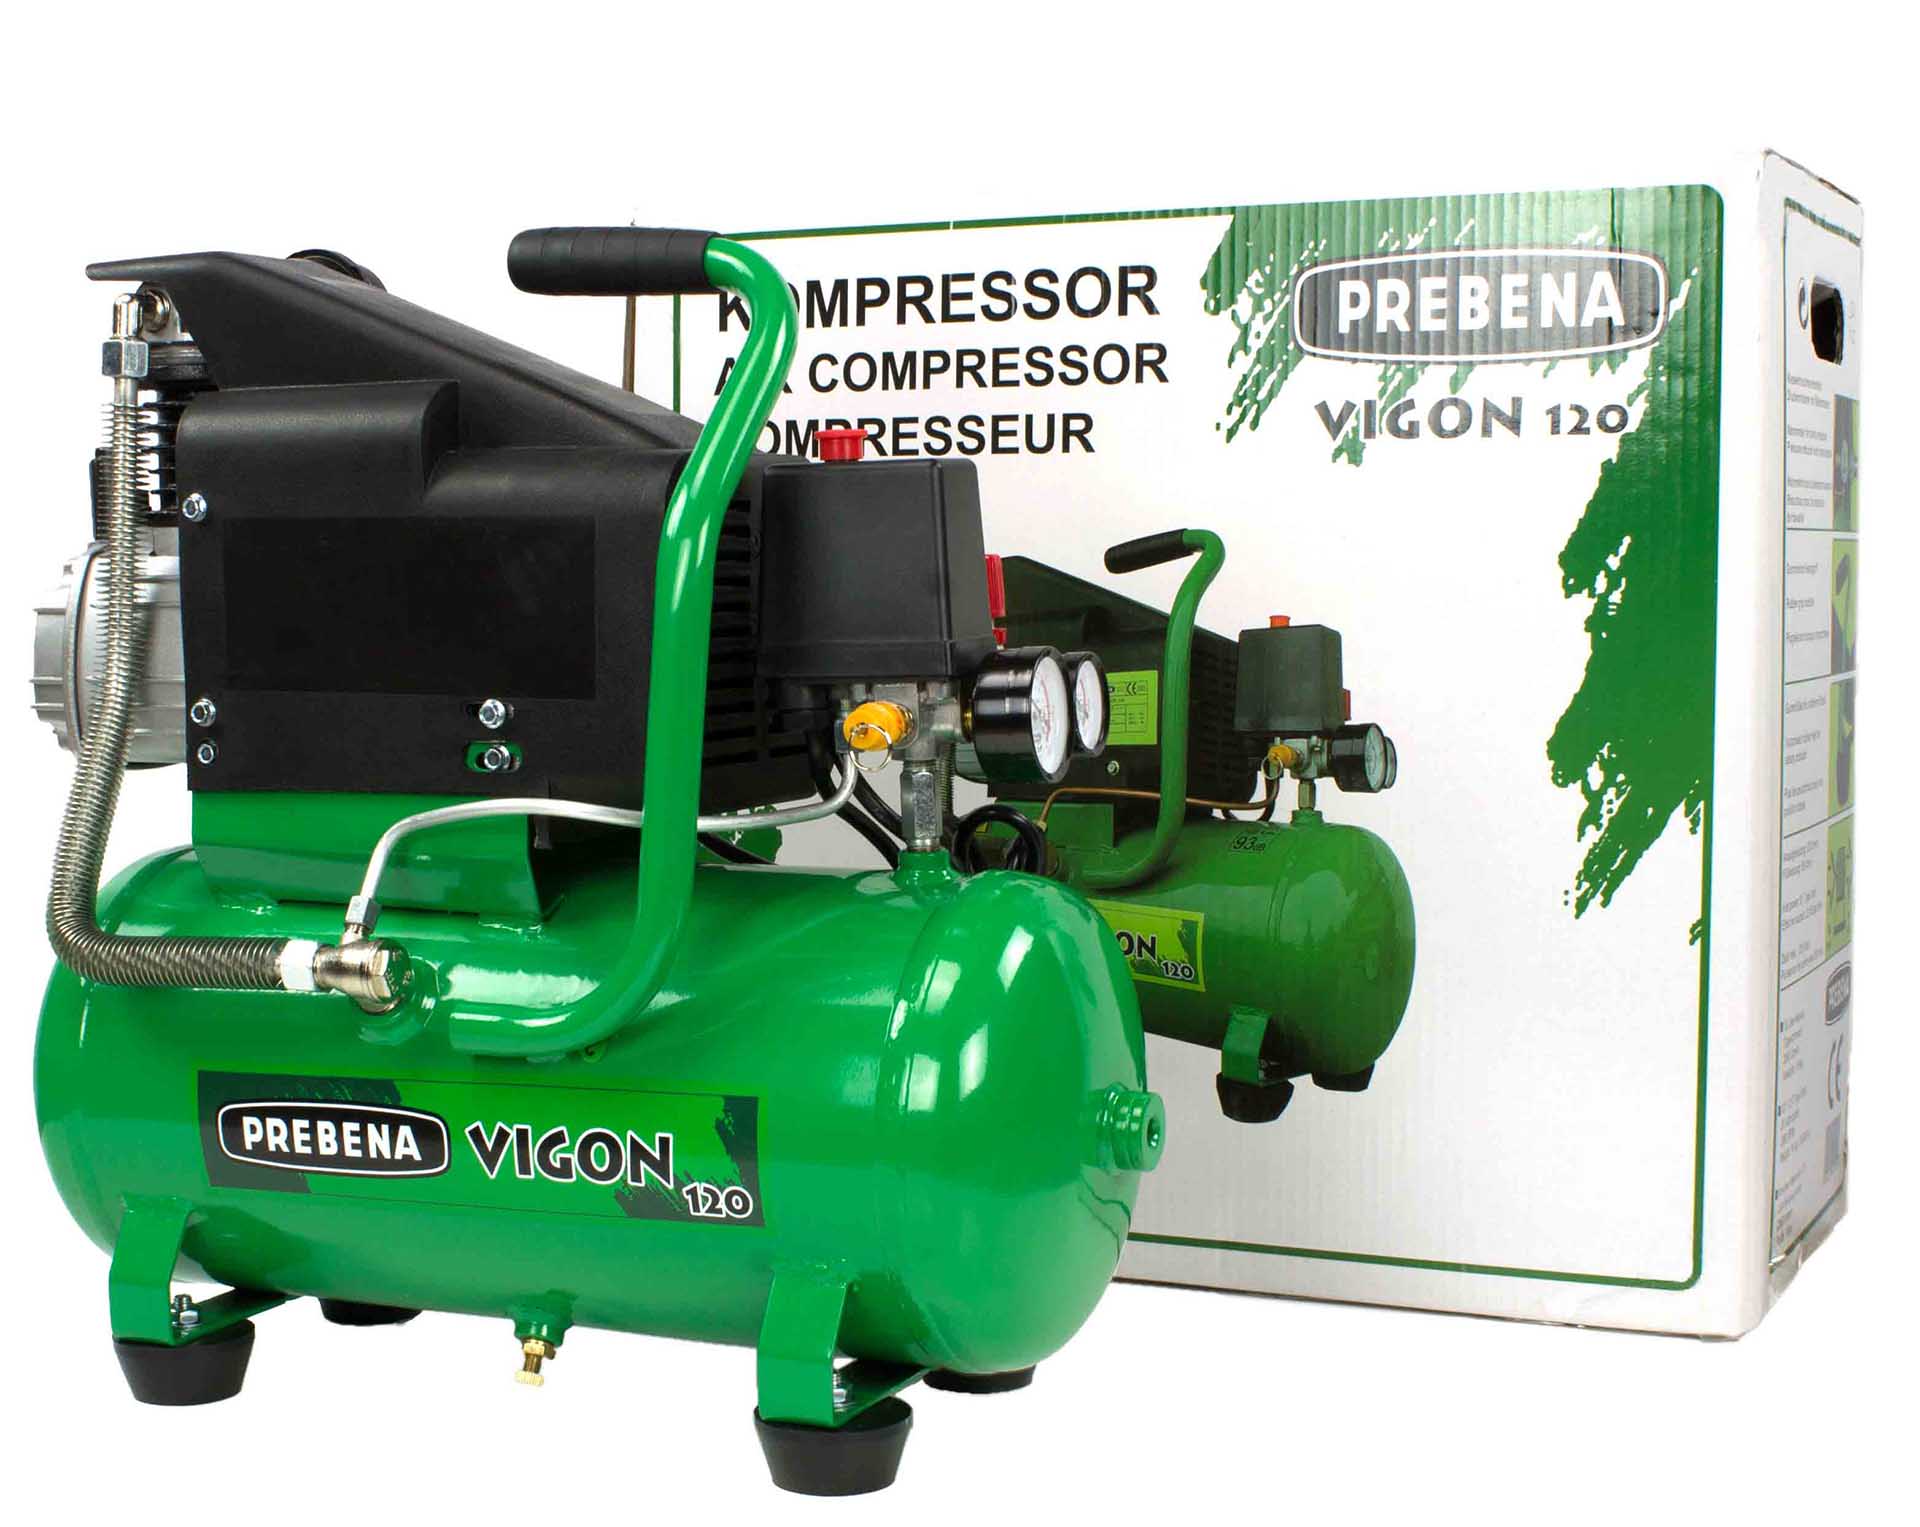 PREBENA - VIGON 120 Kompressor